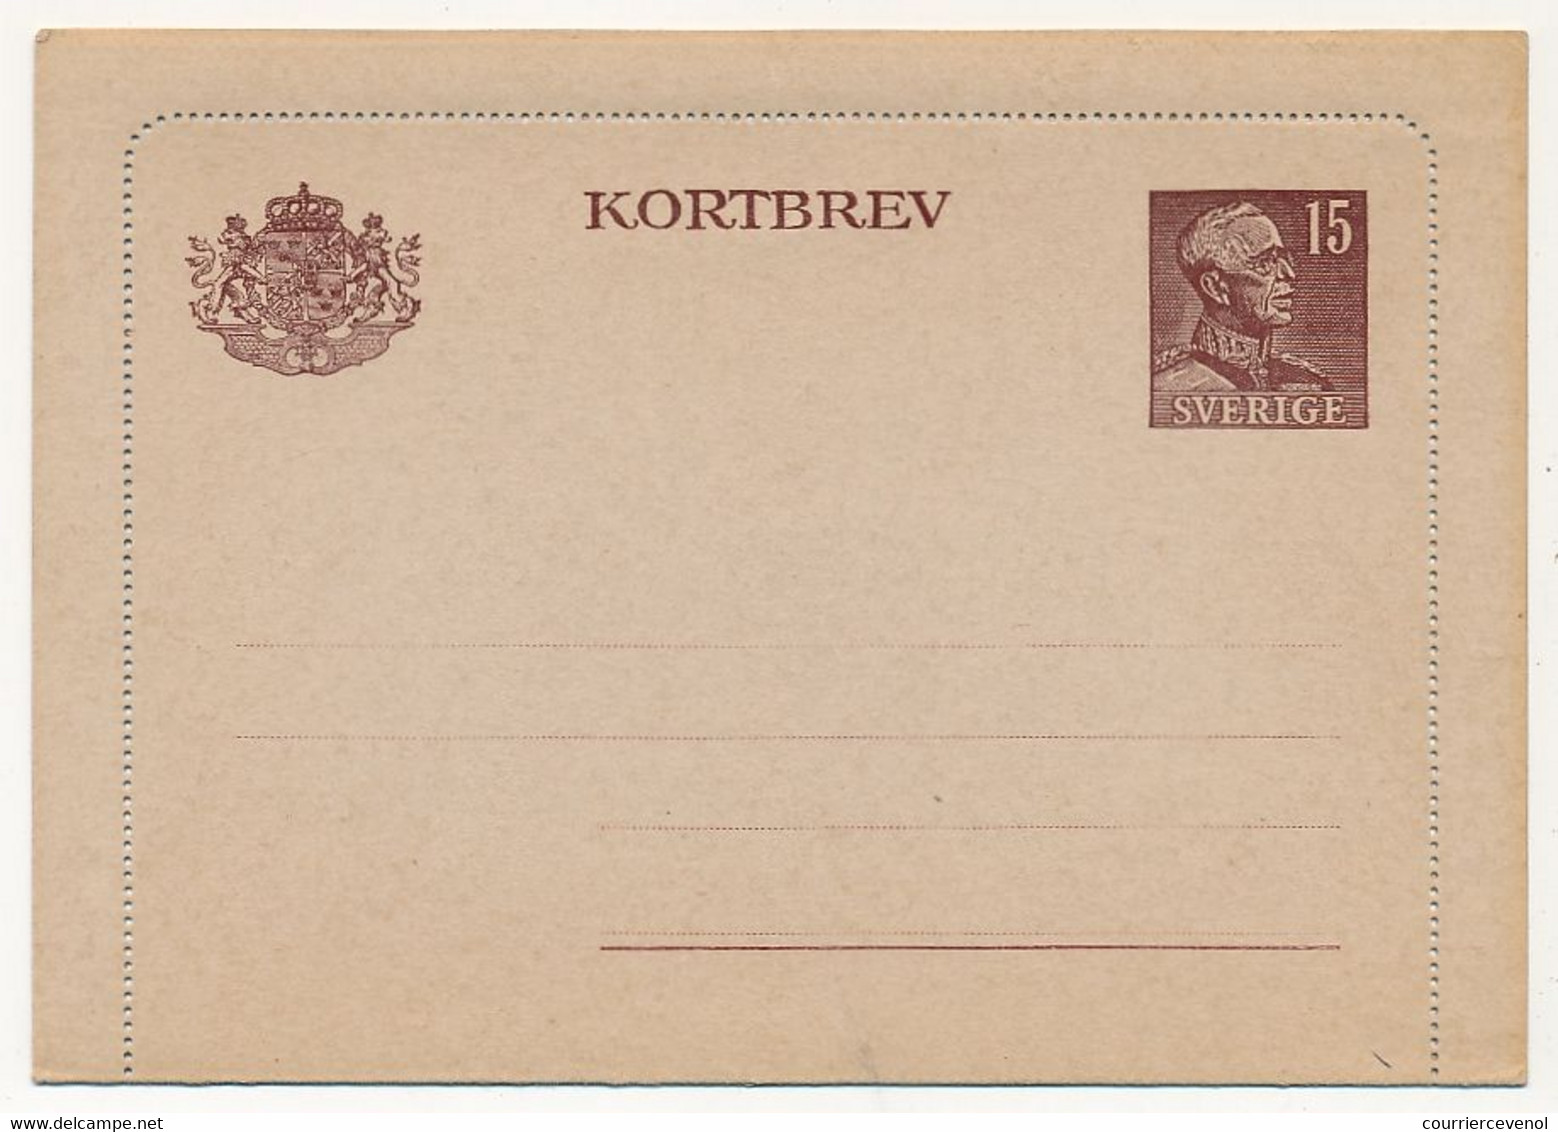 SUEDE - Carte Lettre (Kortbev) GUSTAVE V - 15 Öre - Neuve - Postal Stationery